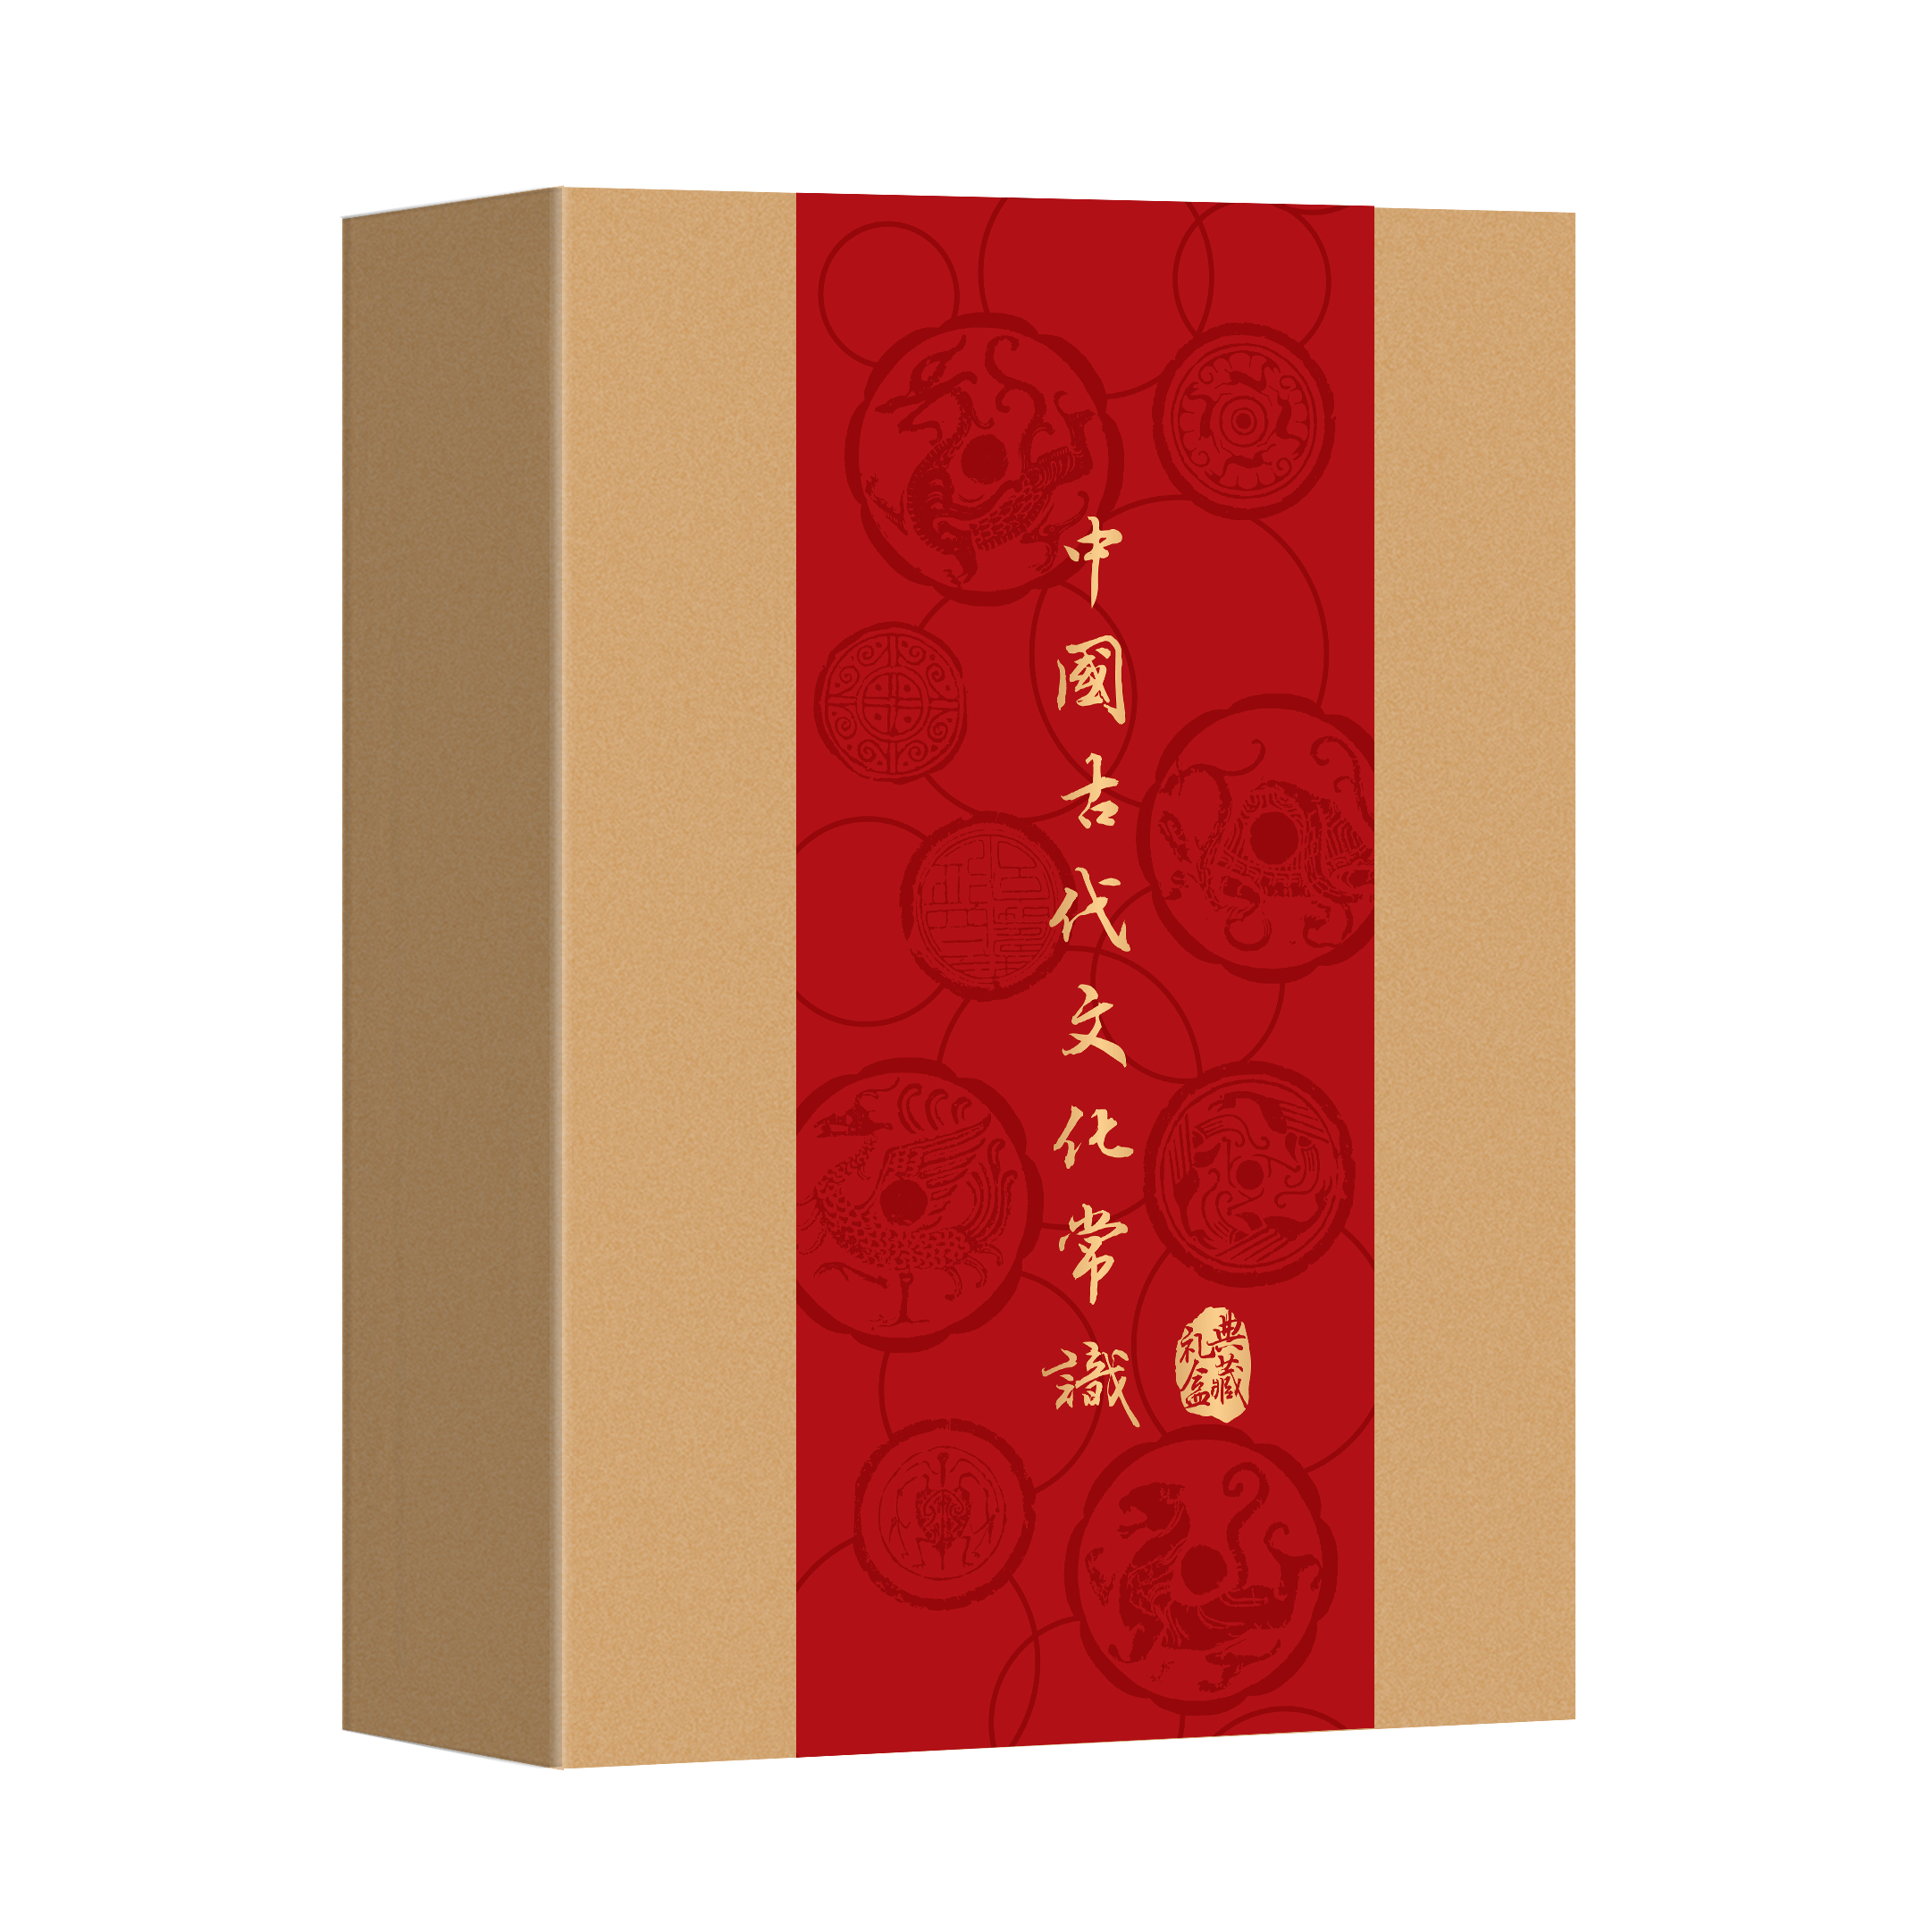 【三联中读年卡特惠】《中国古代文化常识》礼盒 收藏   赠送周边